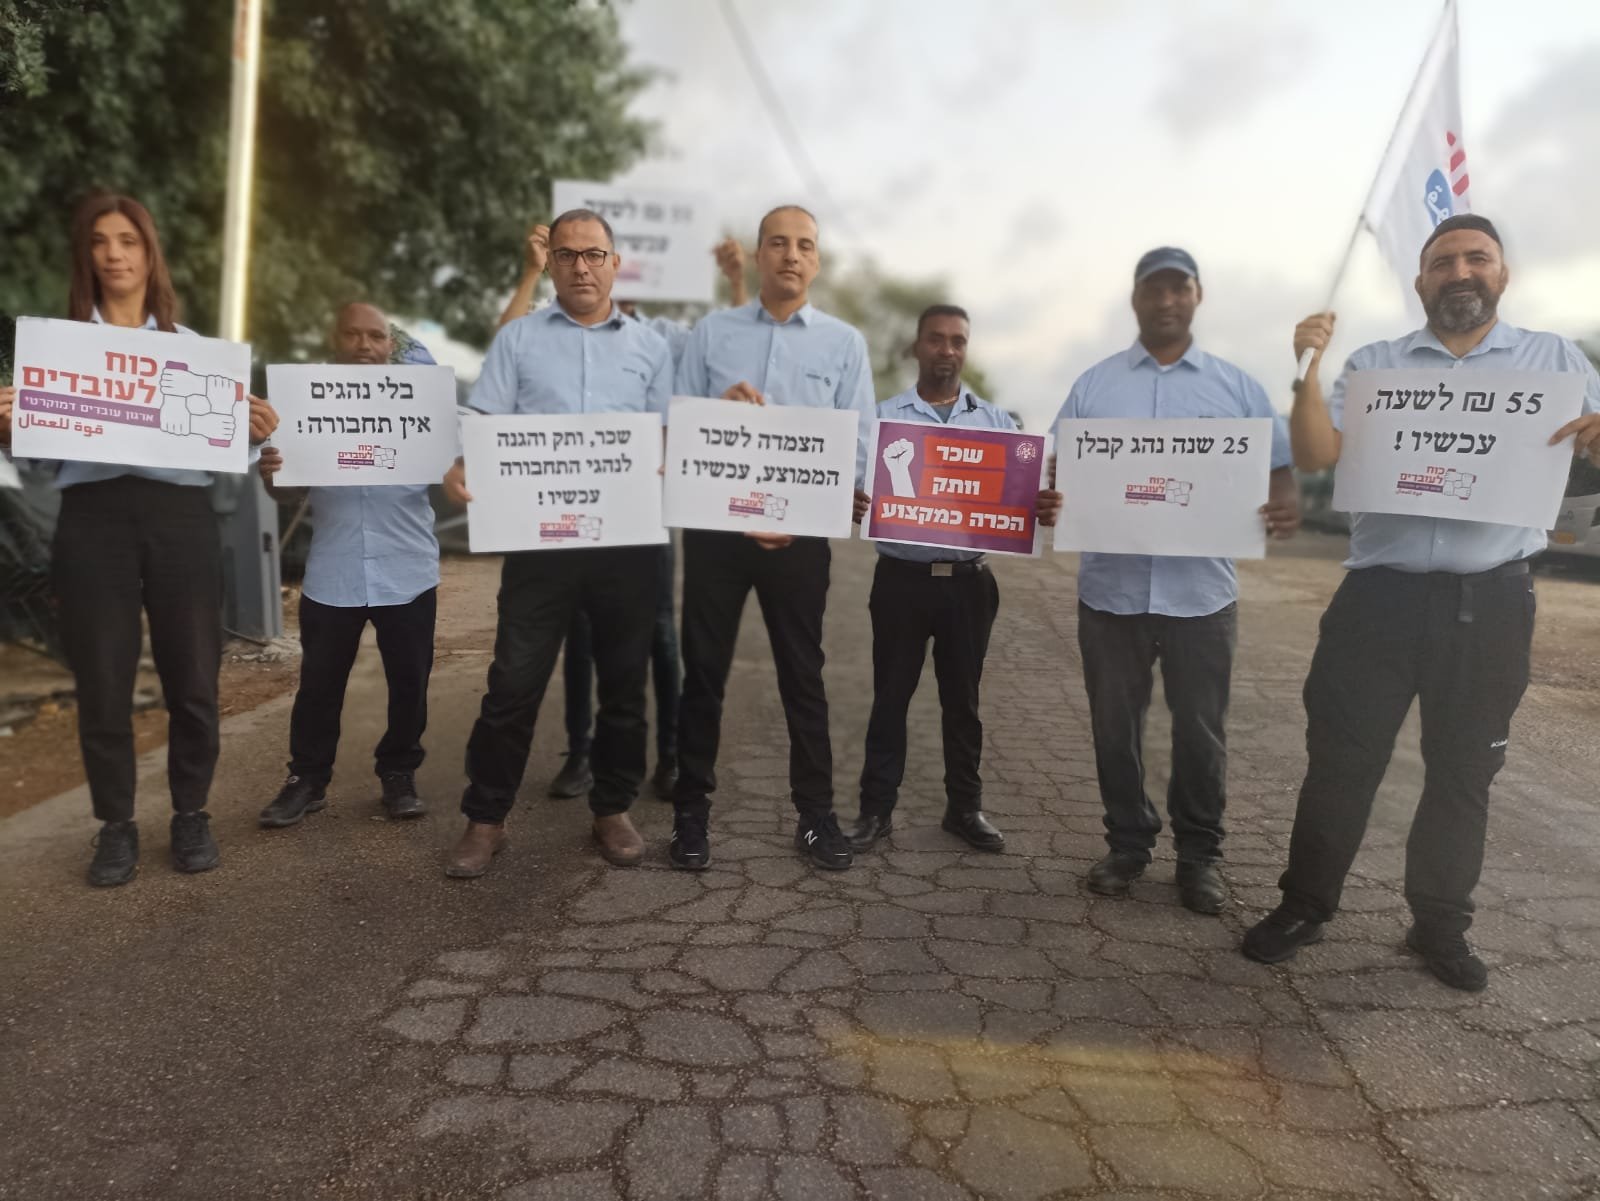 احتجاجات الأجور: سائقو الحافلات يغلقون الشوارع واضراب جزئي في مدراس لواء حيفا-1